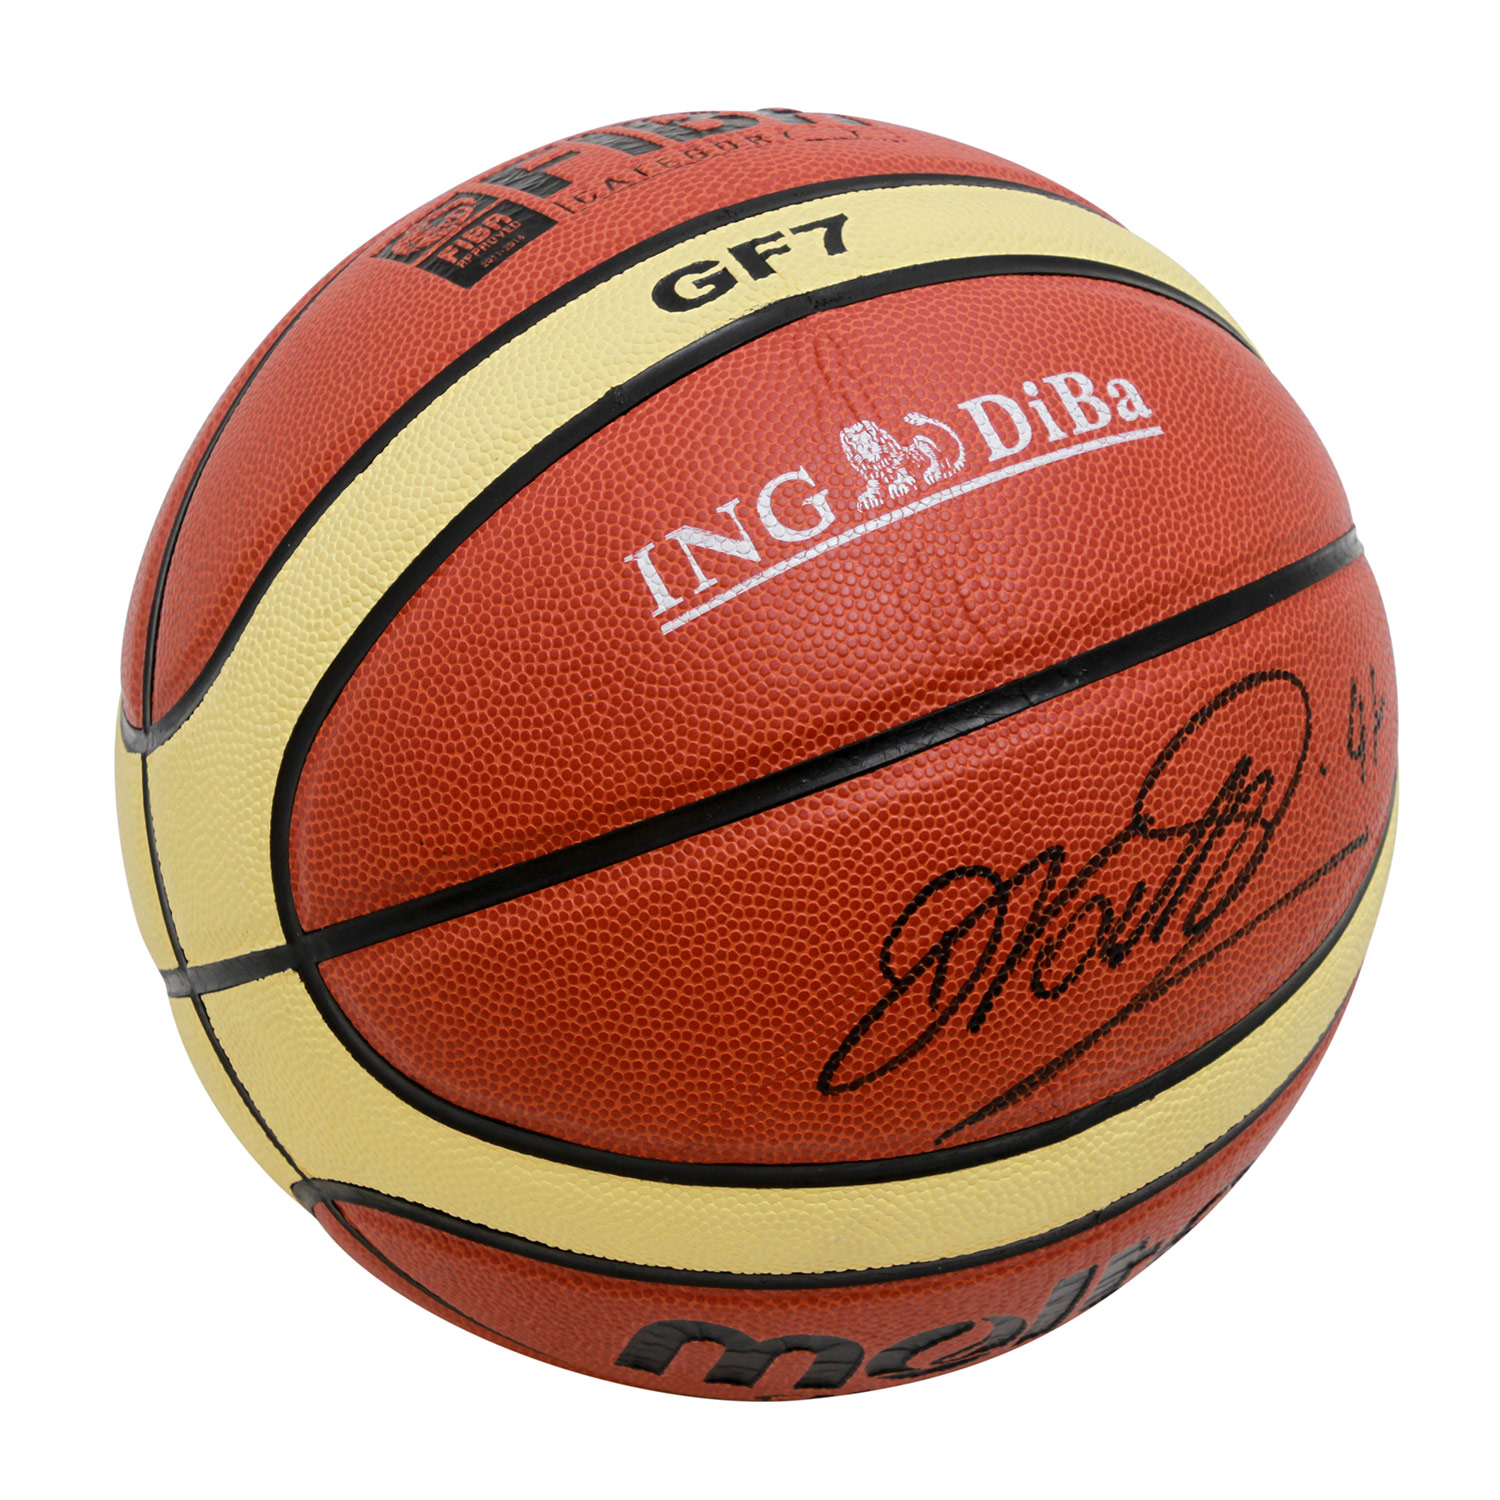 Basketball FIBA Category GF 7, handsigniert von Dirk Nowitzki.Ball unbespielt, Neupreis ca. 80 bis